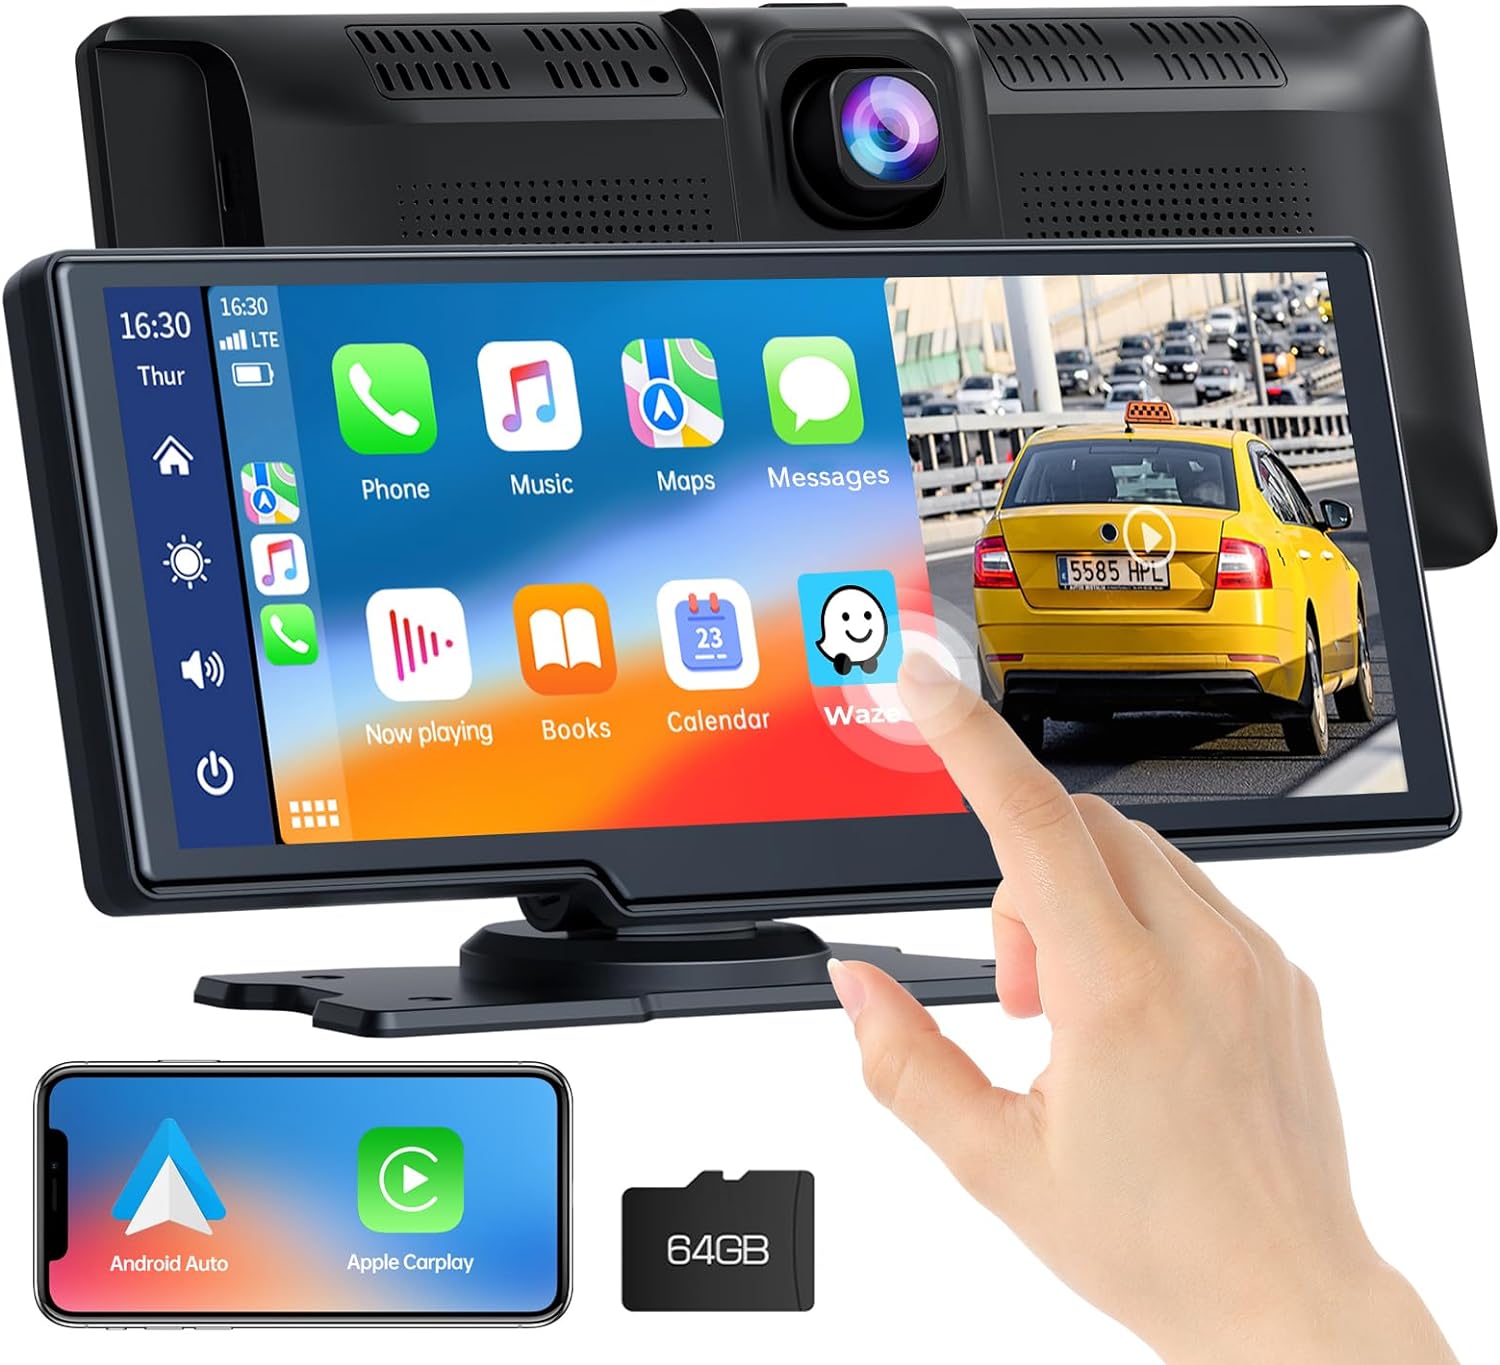 6.86 Inch Android Auto Dashcam with GPS Navigation - China Dashcam for Car, Car  Dashcam